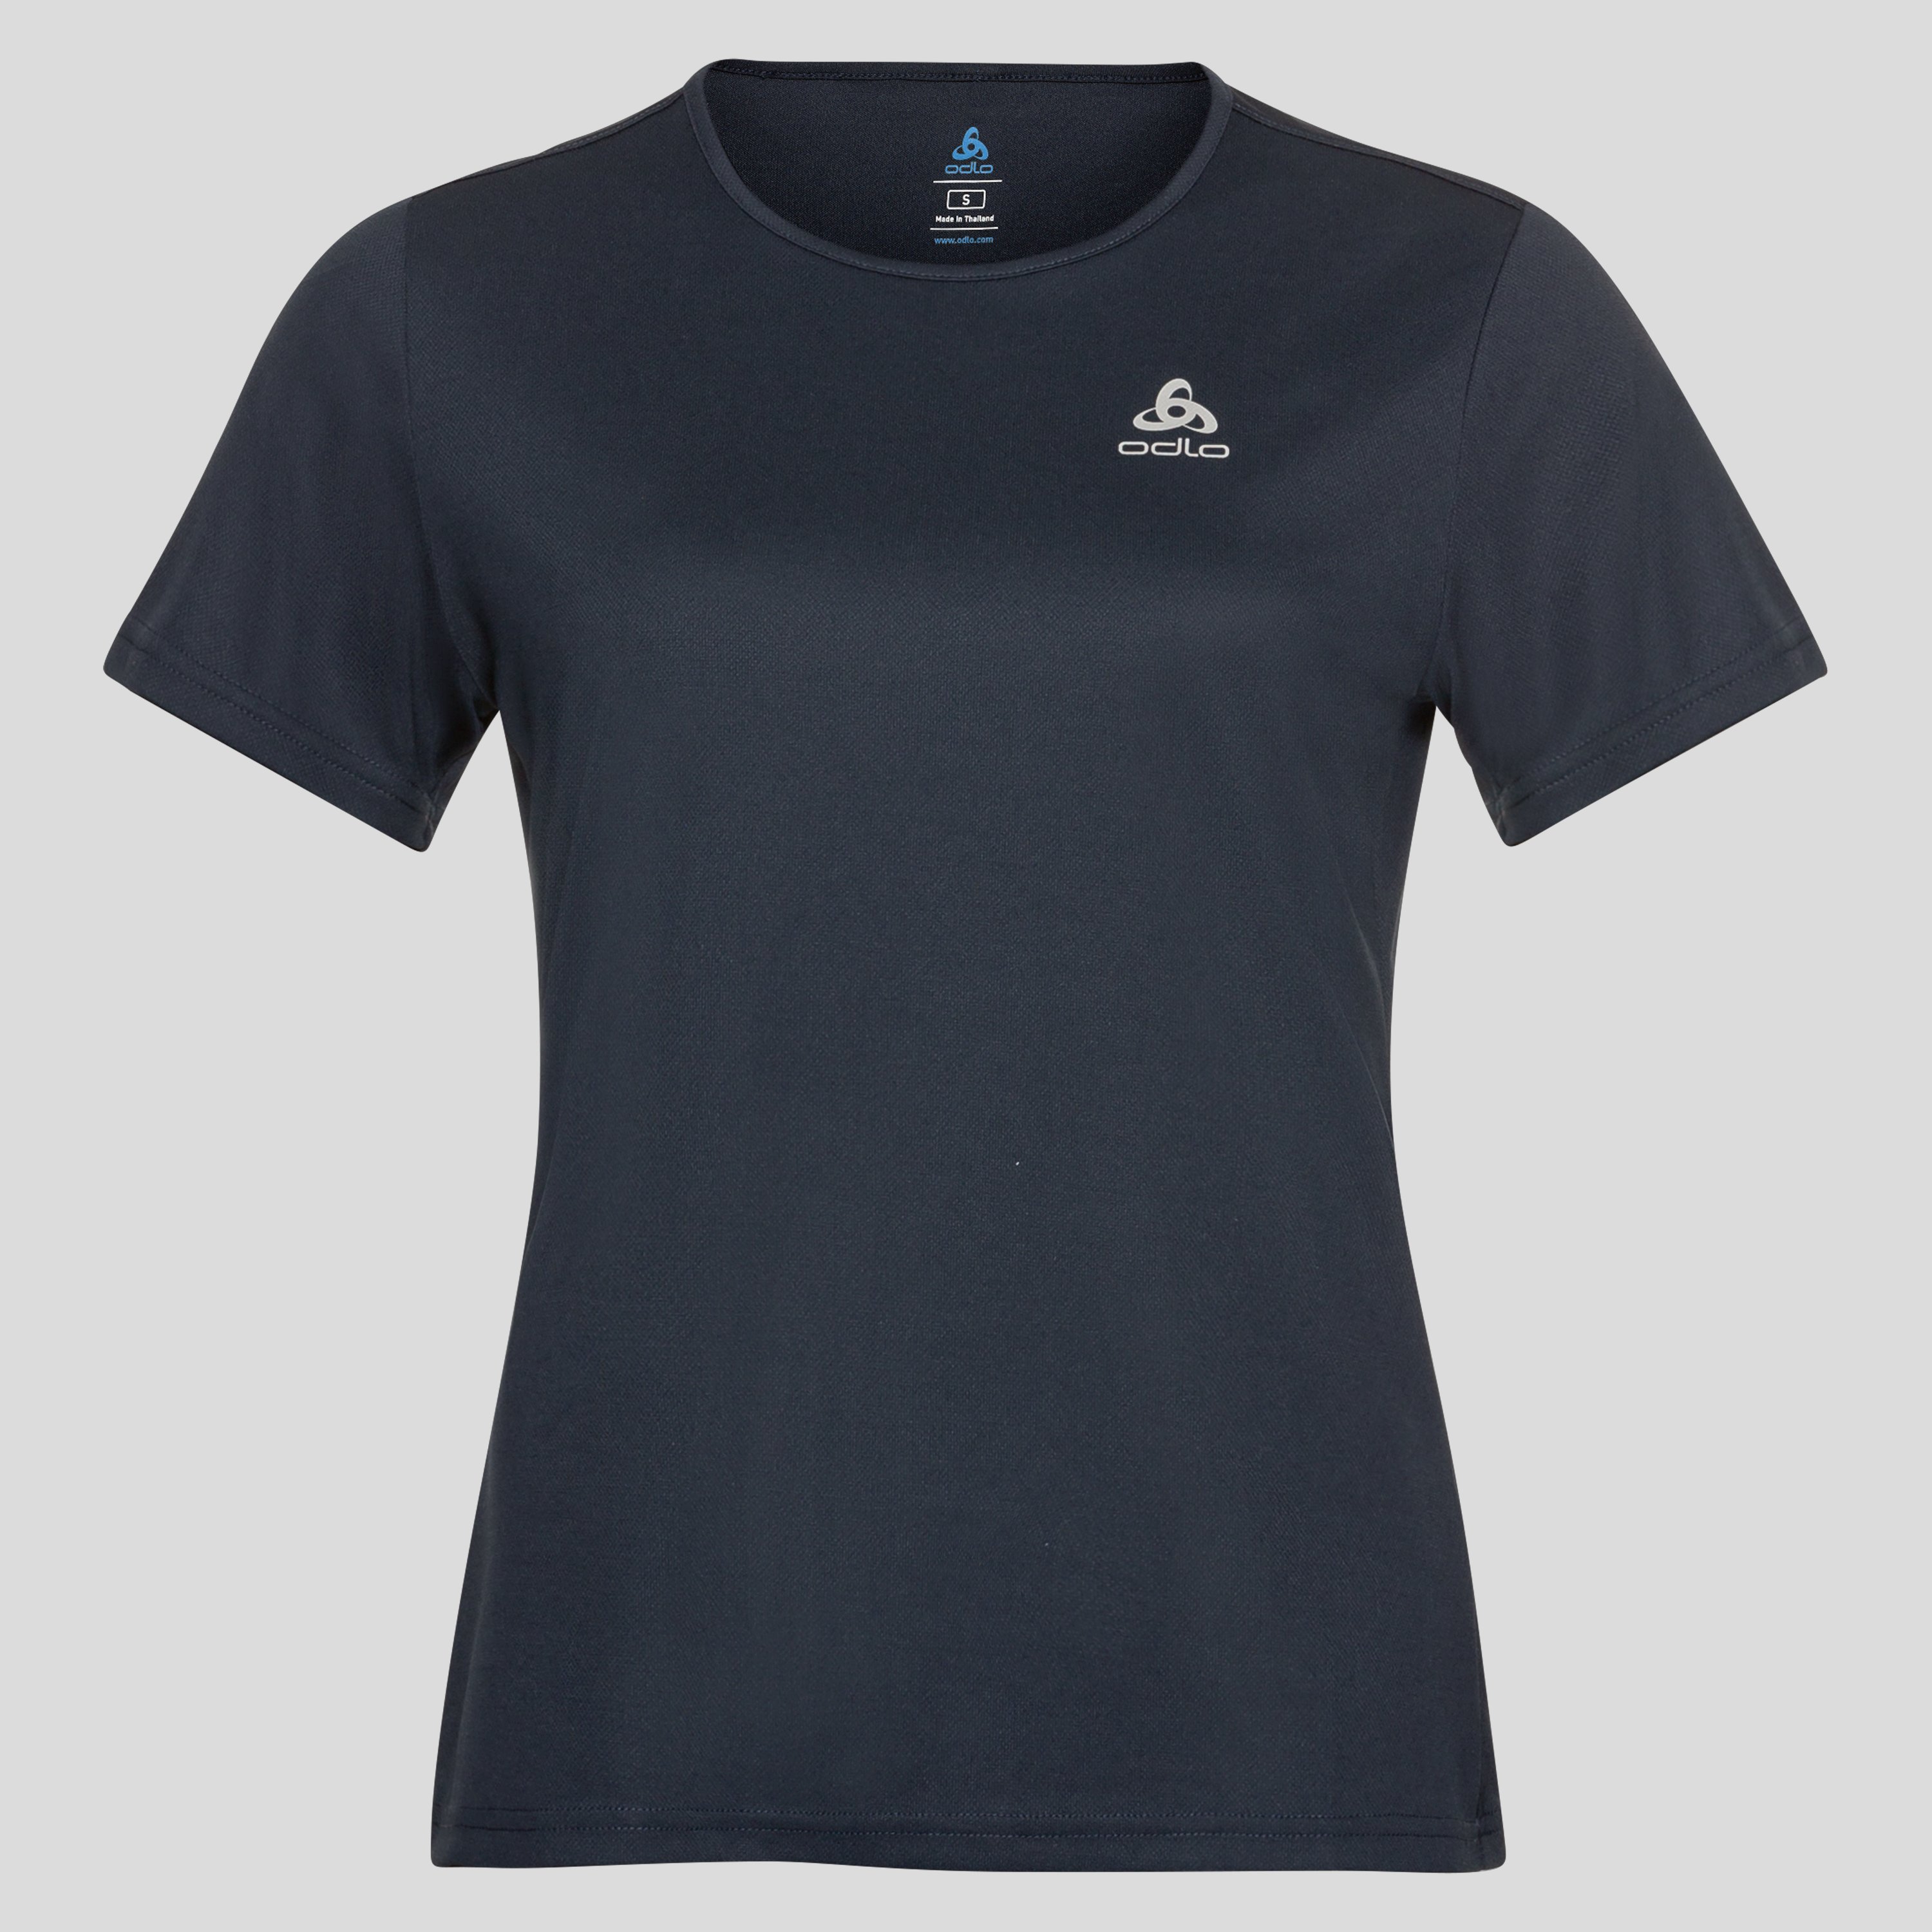 ODLO Cardada T-Shirt für Damen, M, marineblau